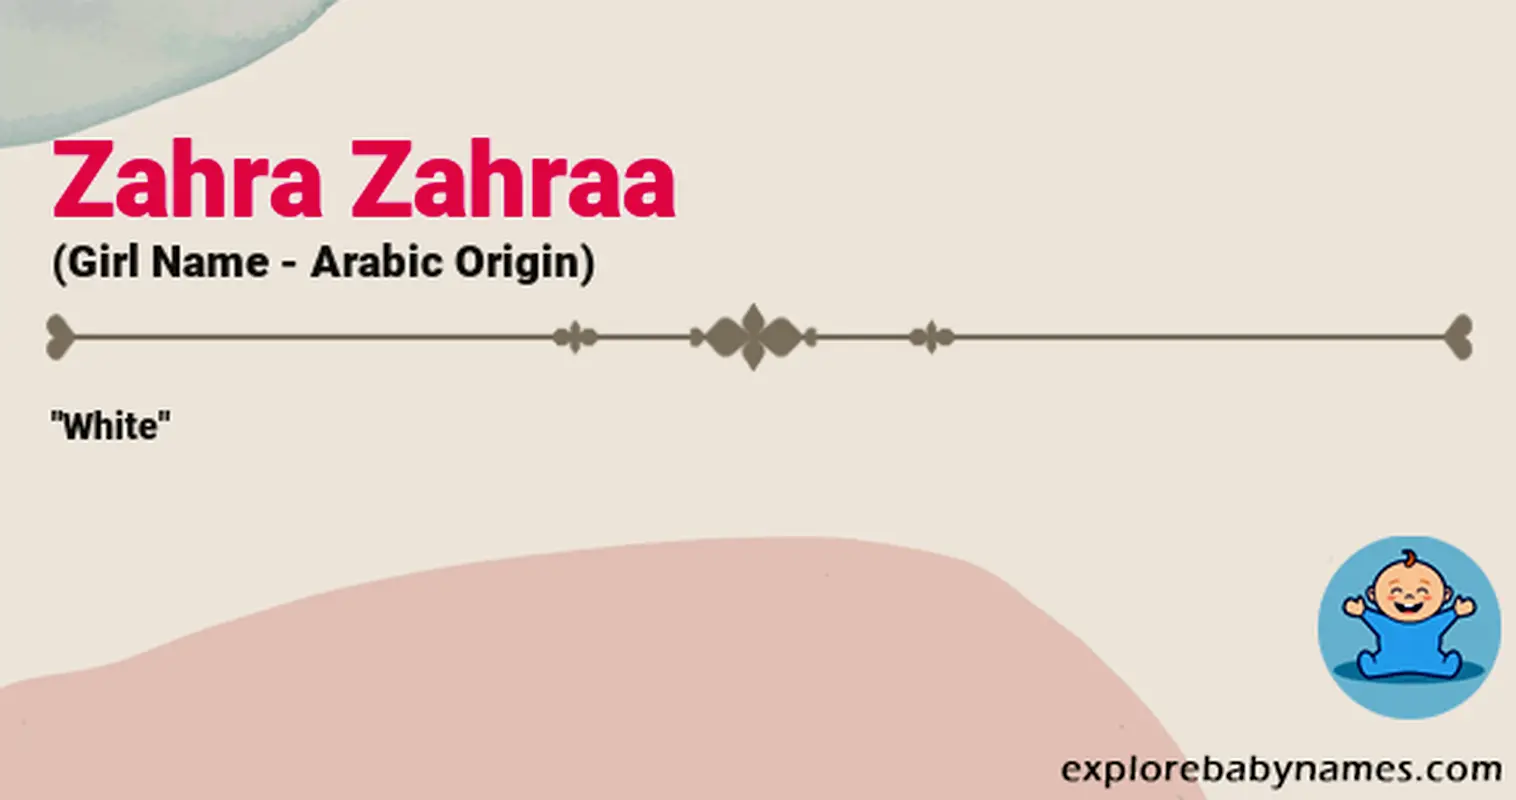 Meaning of Zahra Zahraa